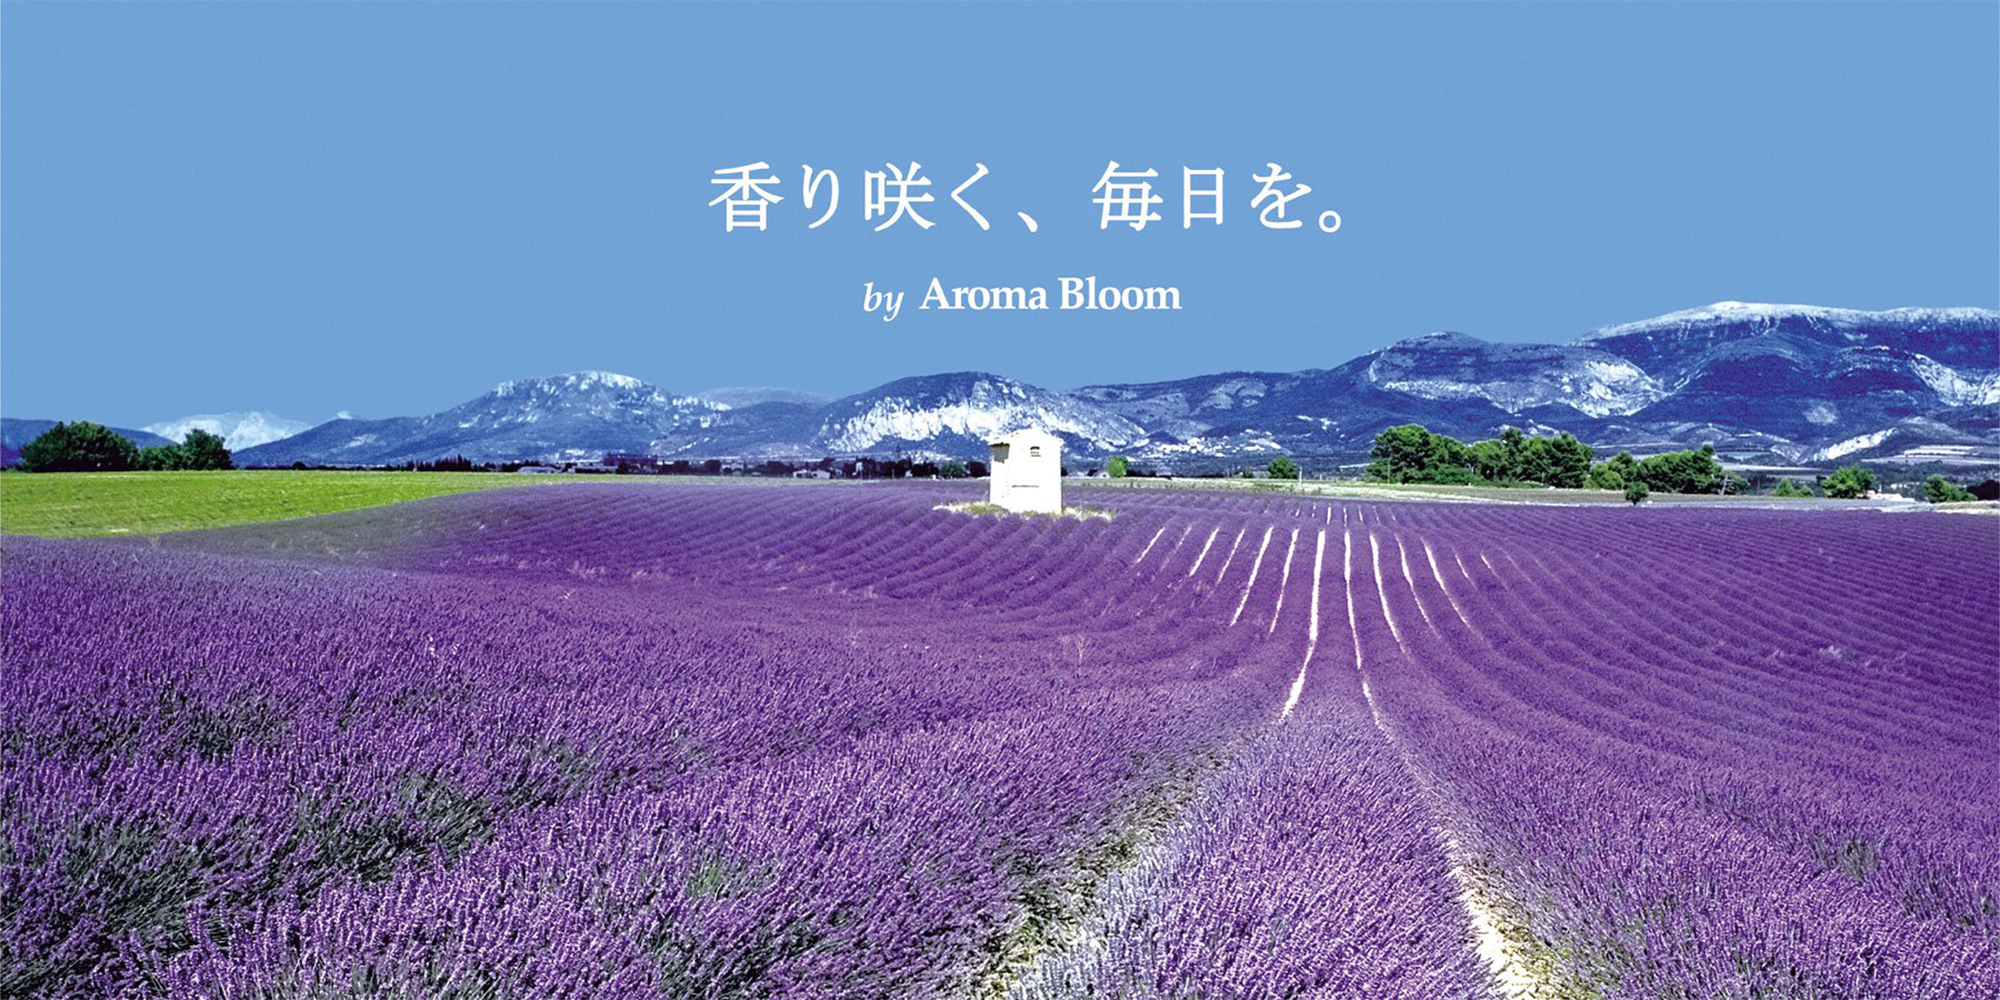 Aroma Bloom | アロマ・リラクゼーショングッズのアロマブルーム